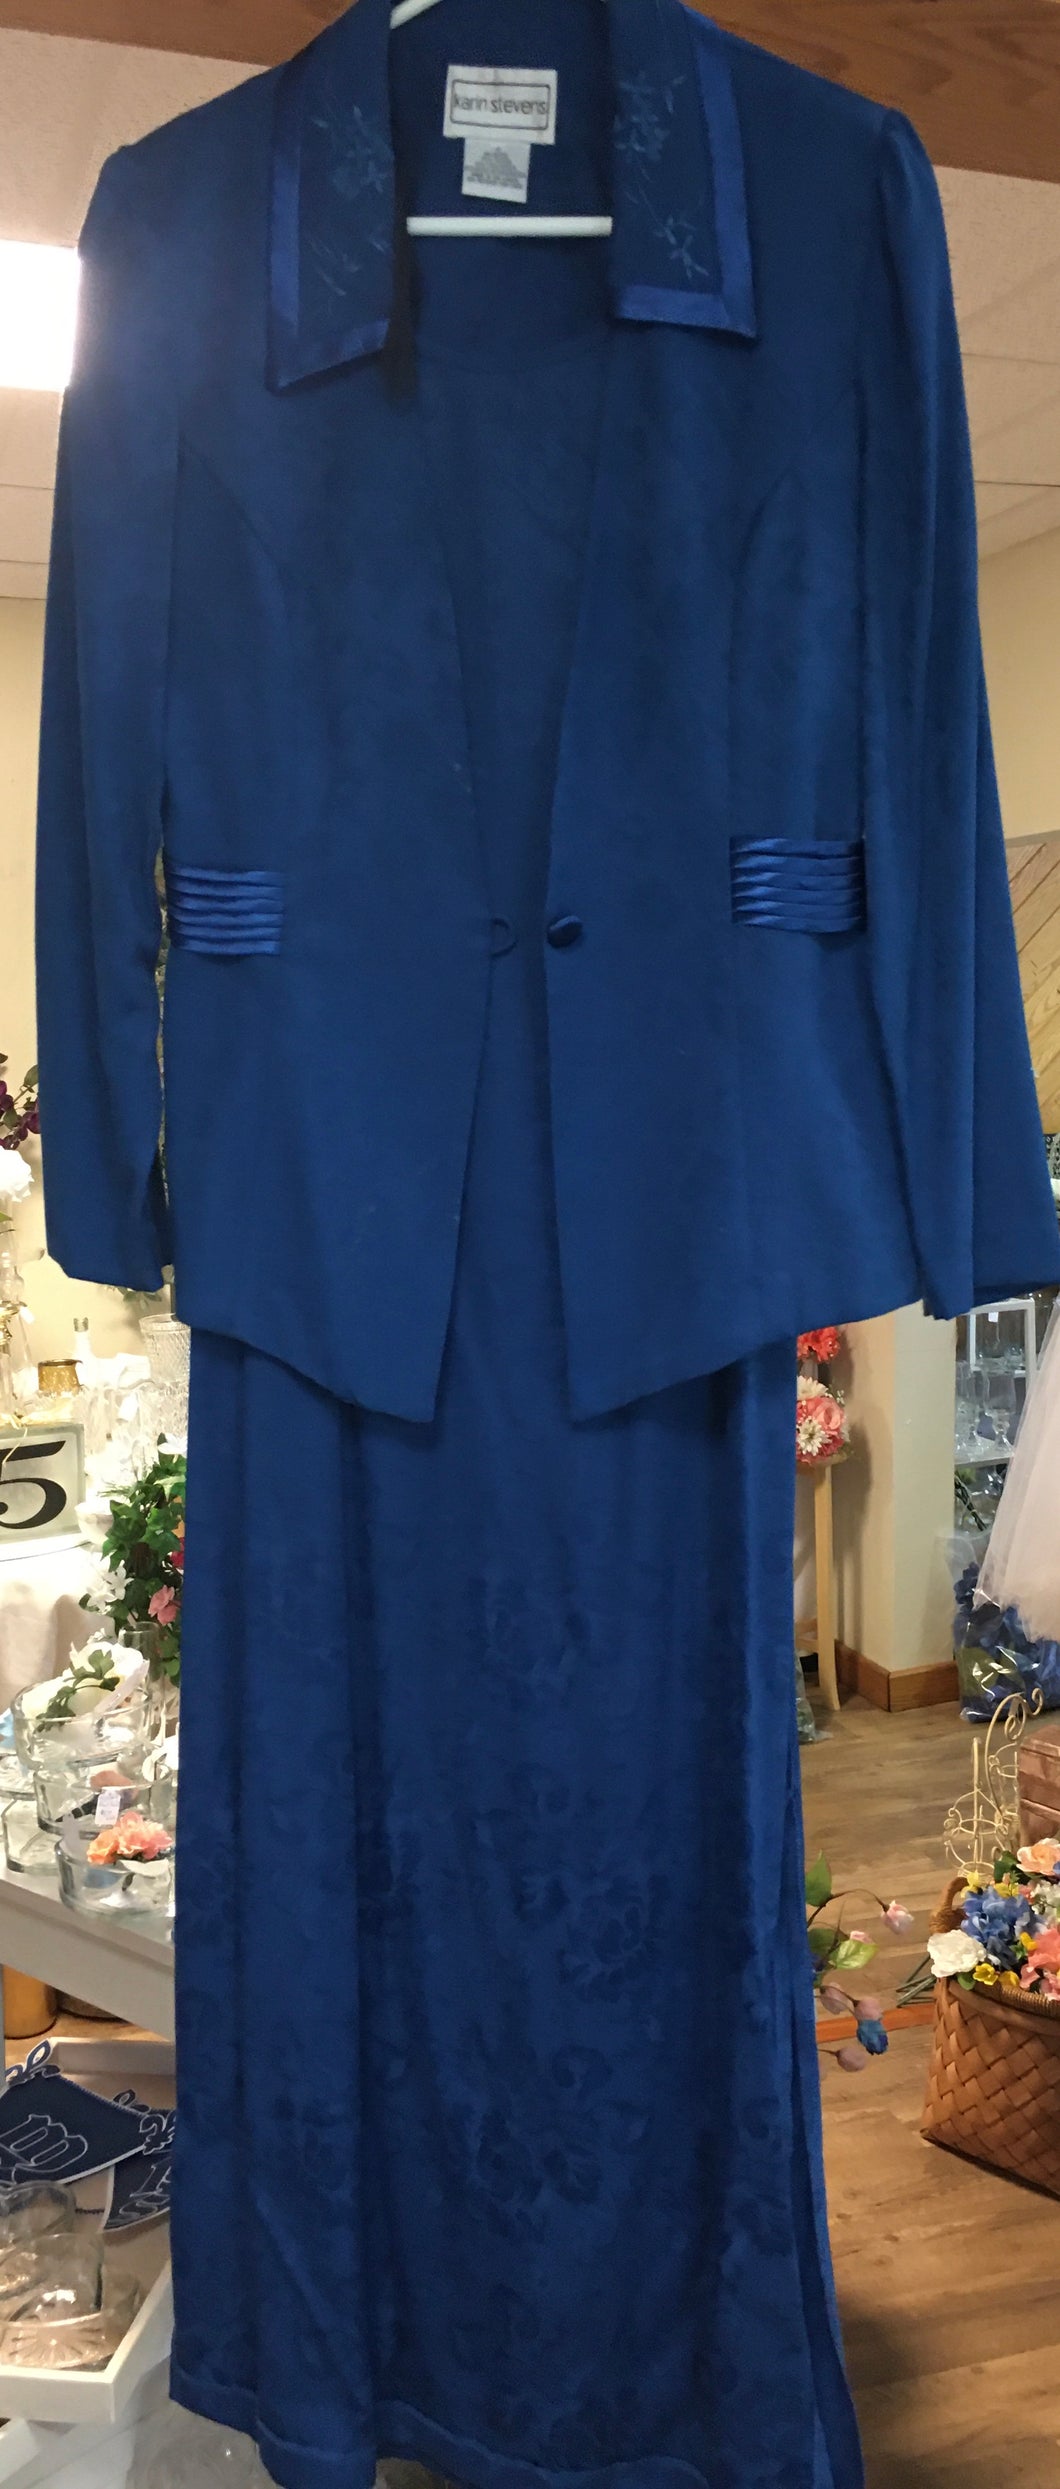 OTOL200-I. Blue Dress with Jacket, size 10